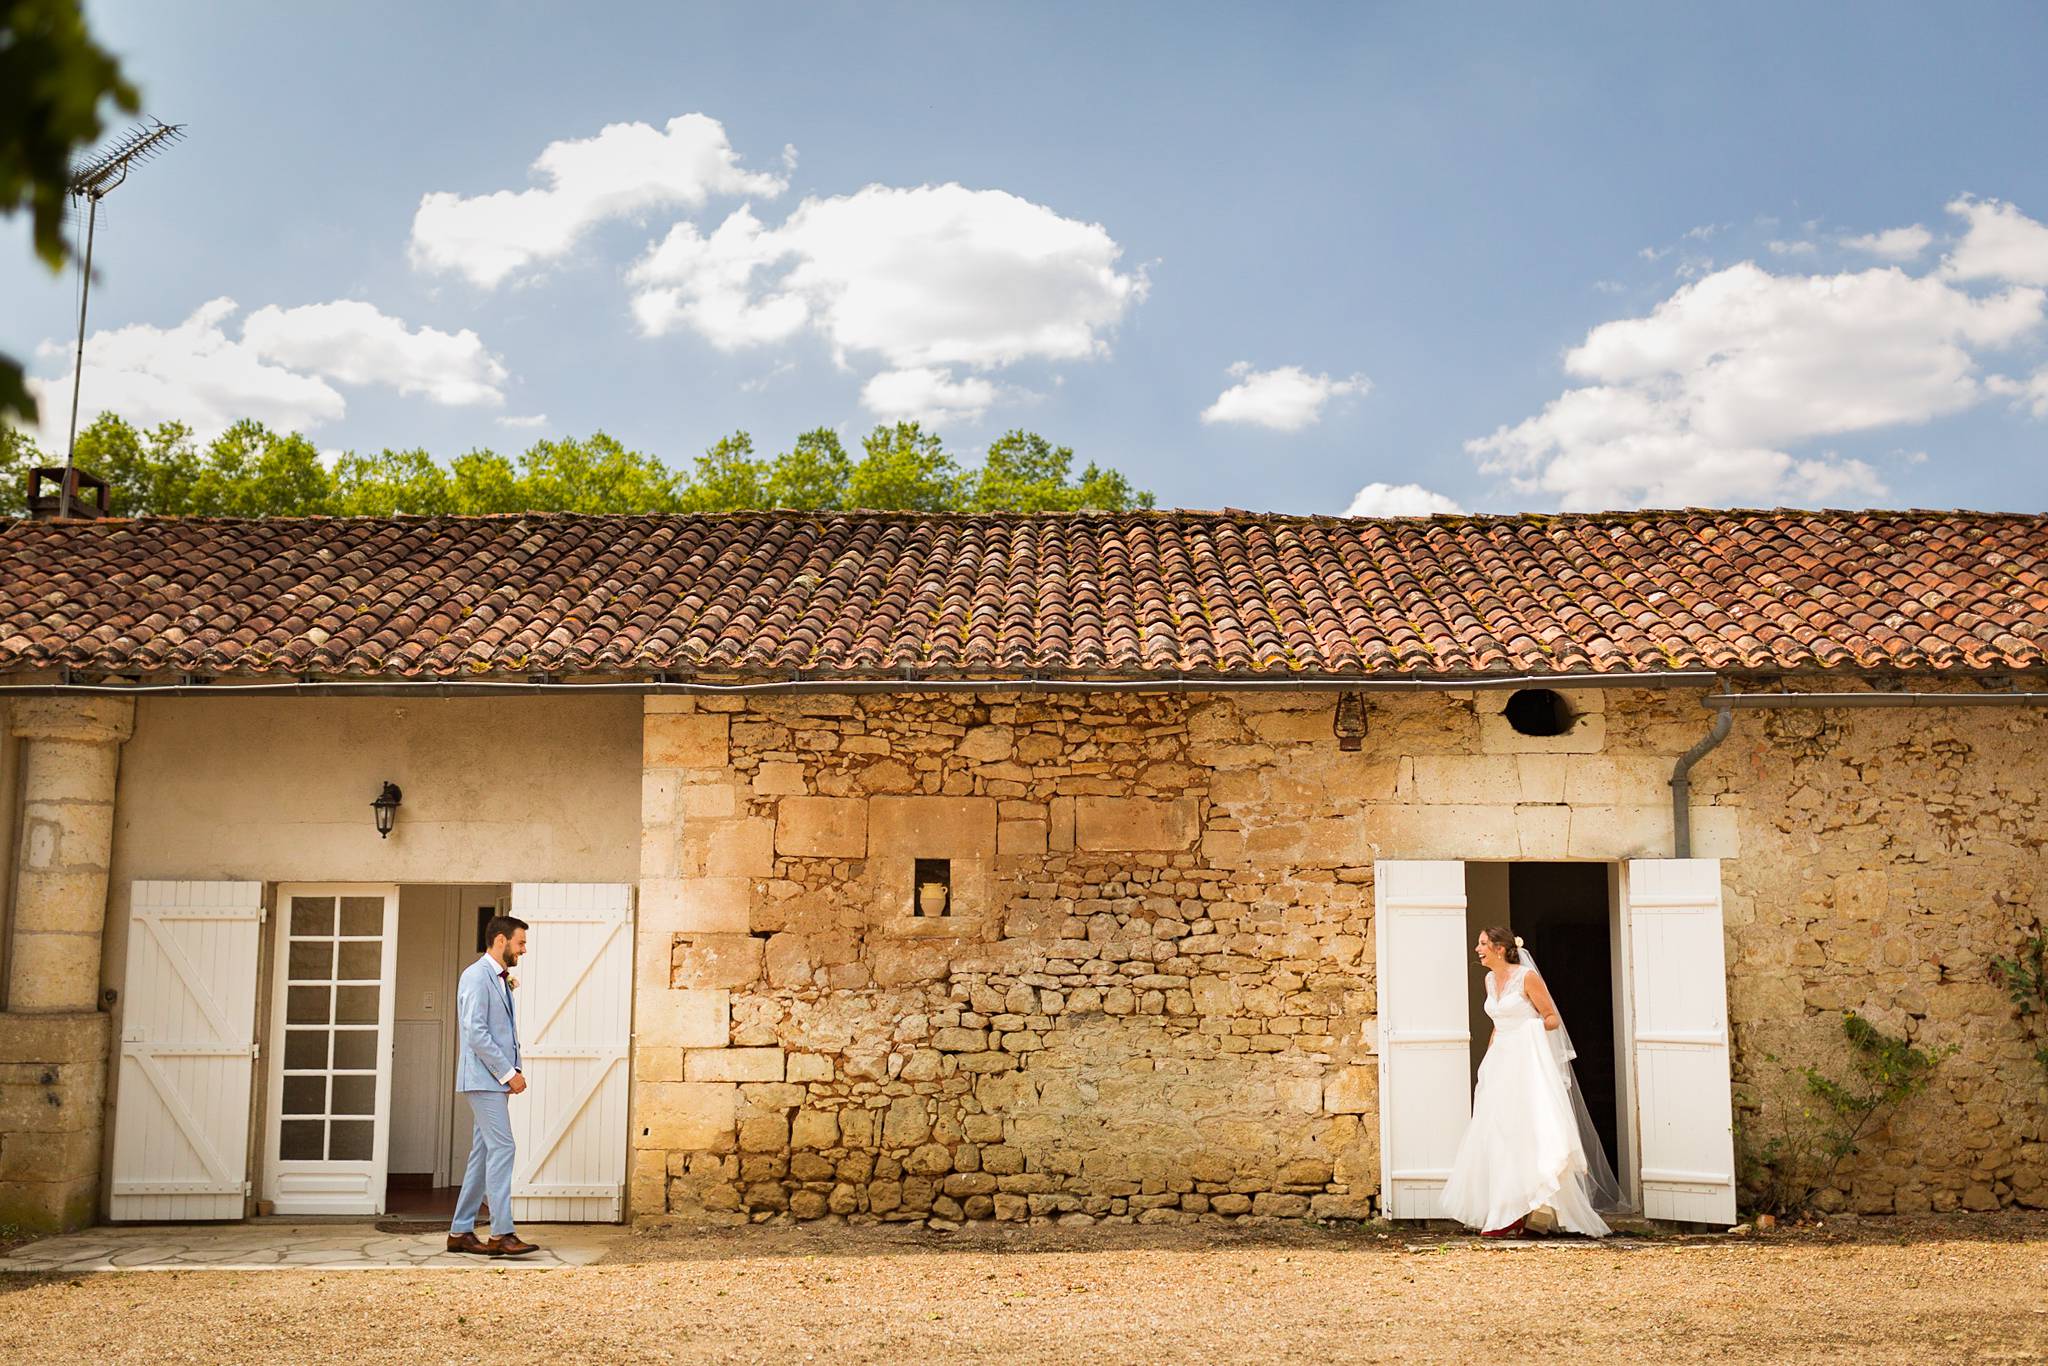 Aperçu des photos de mariages aventurières de Valérie et Adrien au Domaine de Montplaisir en Dordogne, et de leur photobooth mariage. Photographe mariage Dordogne.